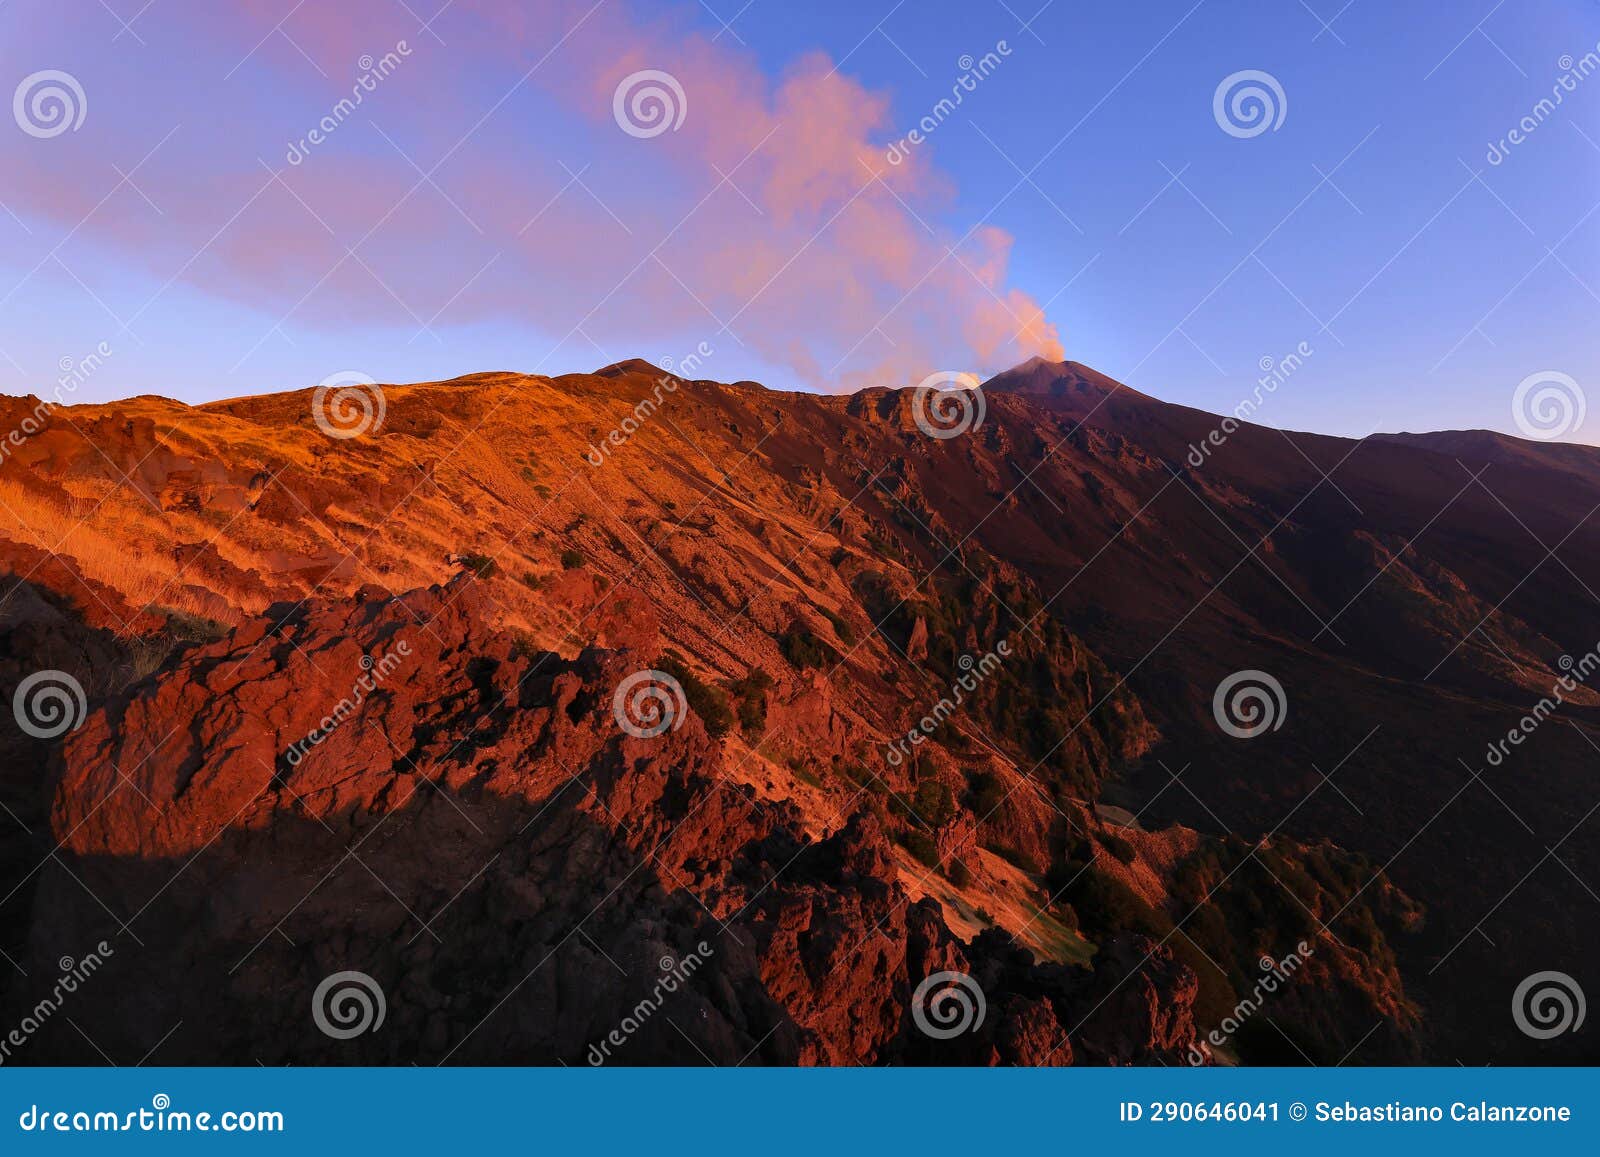 alba con suggestive luci sull'etna e vista nella valle del bove - il vulcano di sicilia